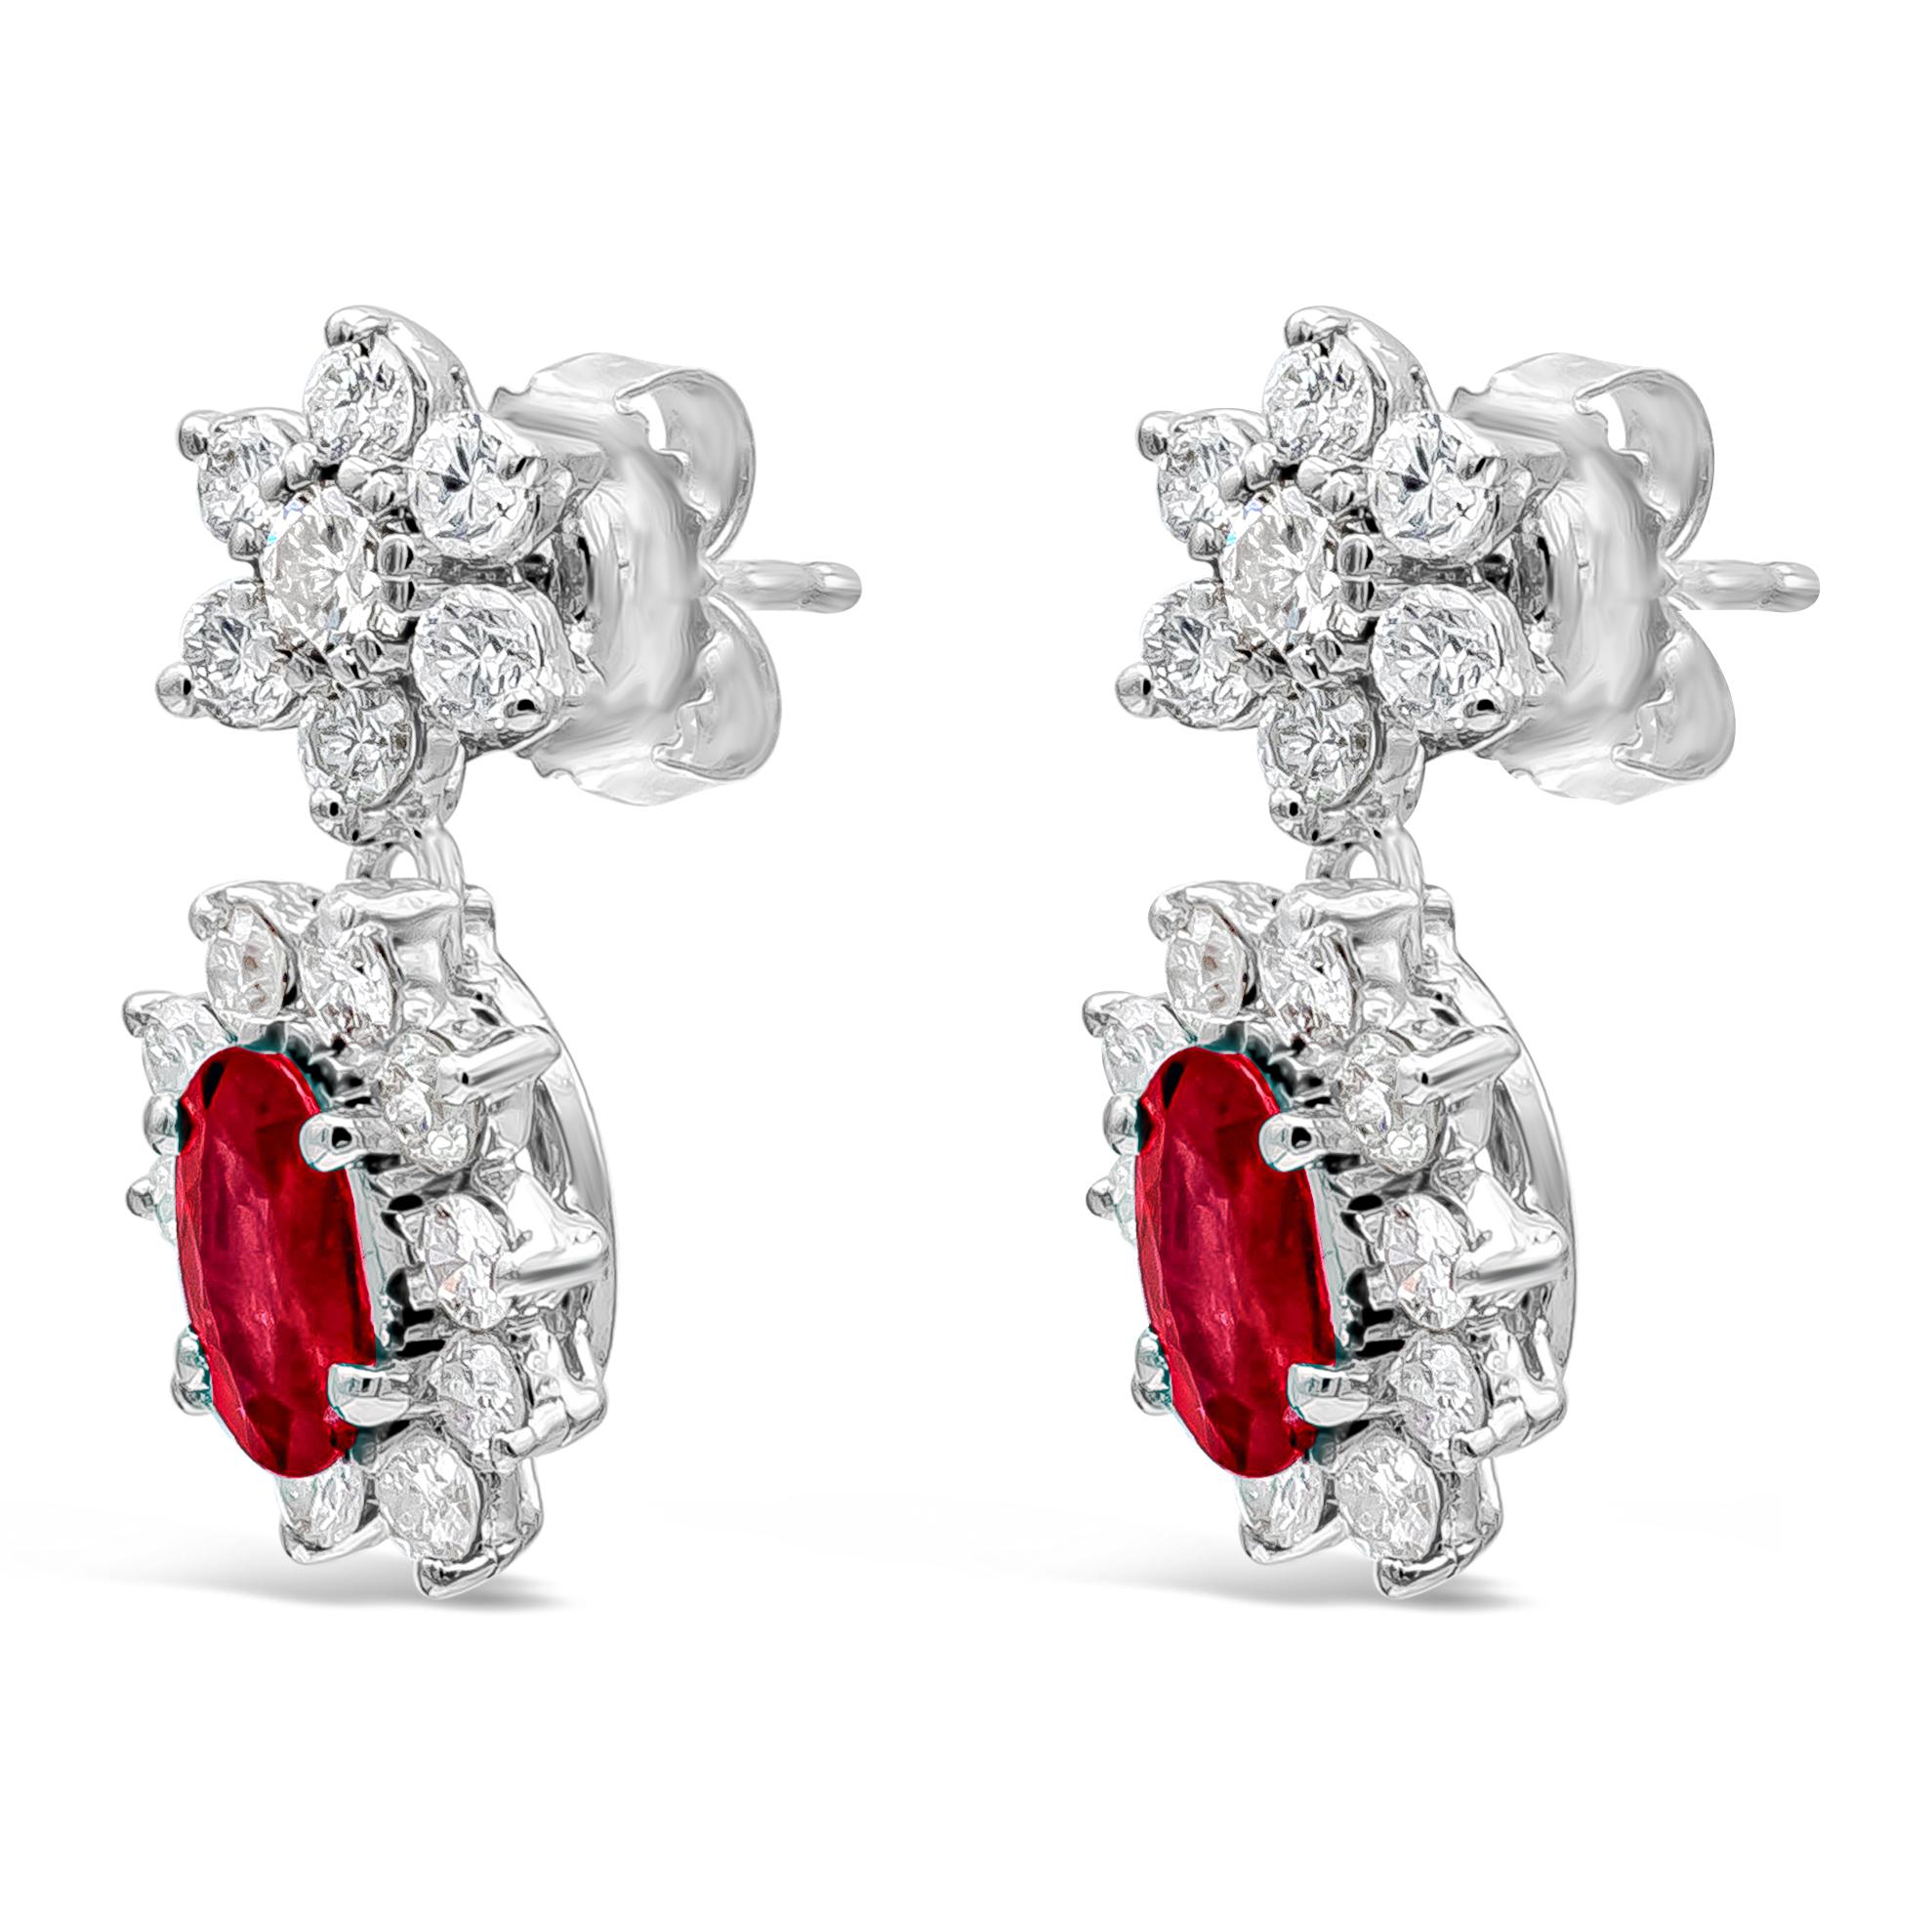 Une paire élégante et chic de boucles d'oreilles classiques, mettant en valeur de magnifiques rubis de taille ovale entourés de diamants ronds suspendus à un halo de diamants ronds à motif floral. Les rubis pèsent 1,70 carats au total et les